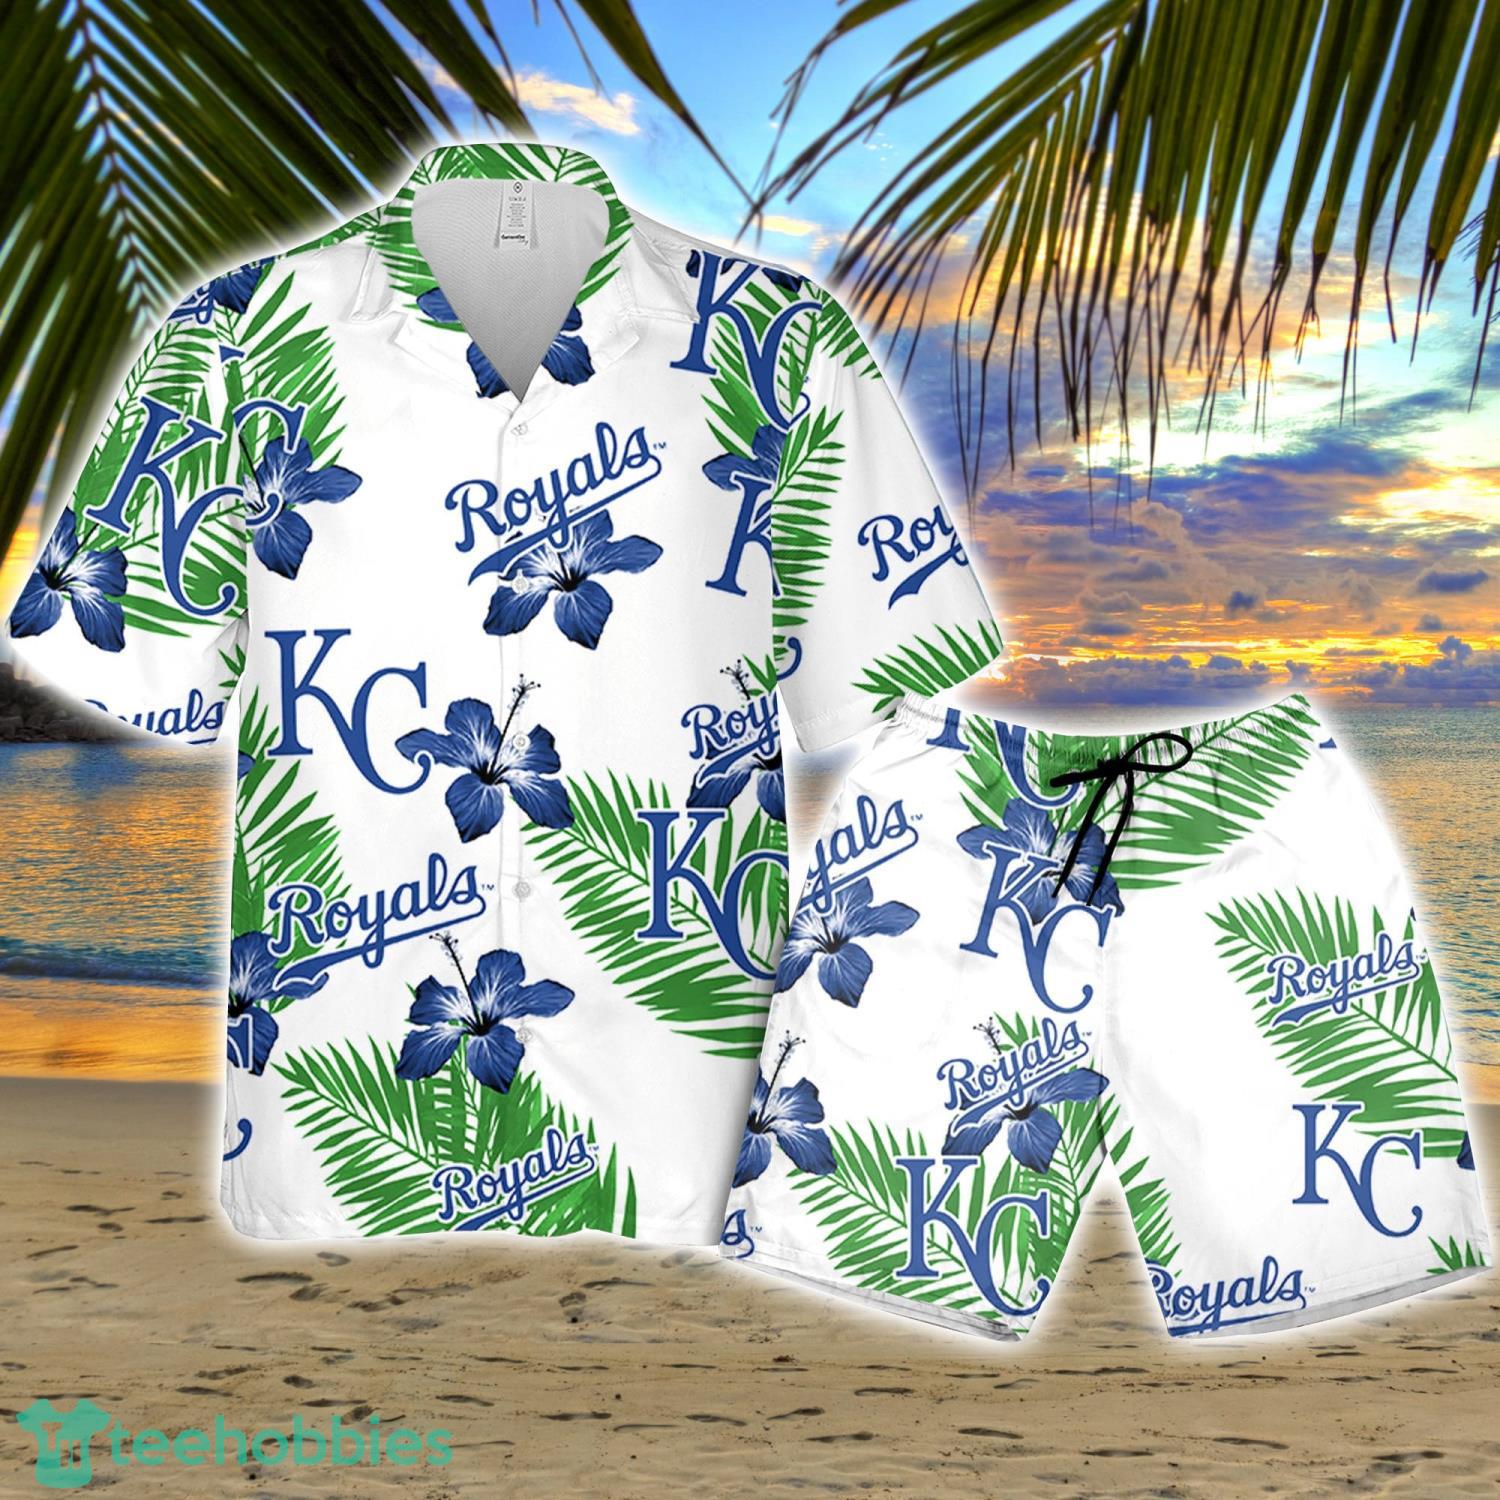 Kansas City Royals Custom Name & Number Baseball Shirt Best Gift